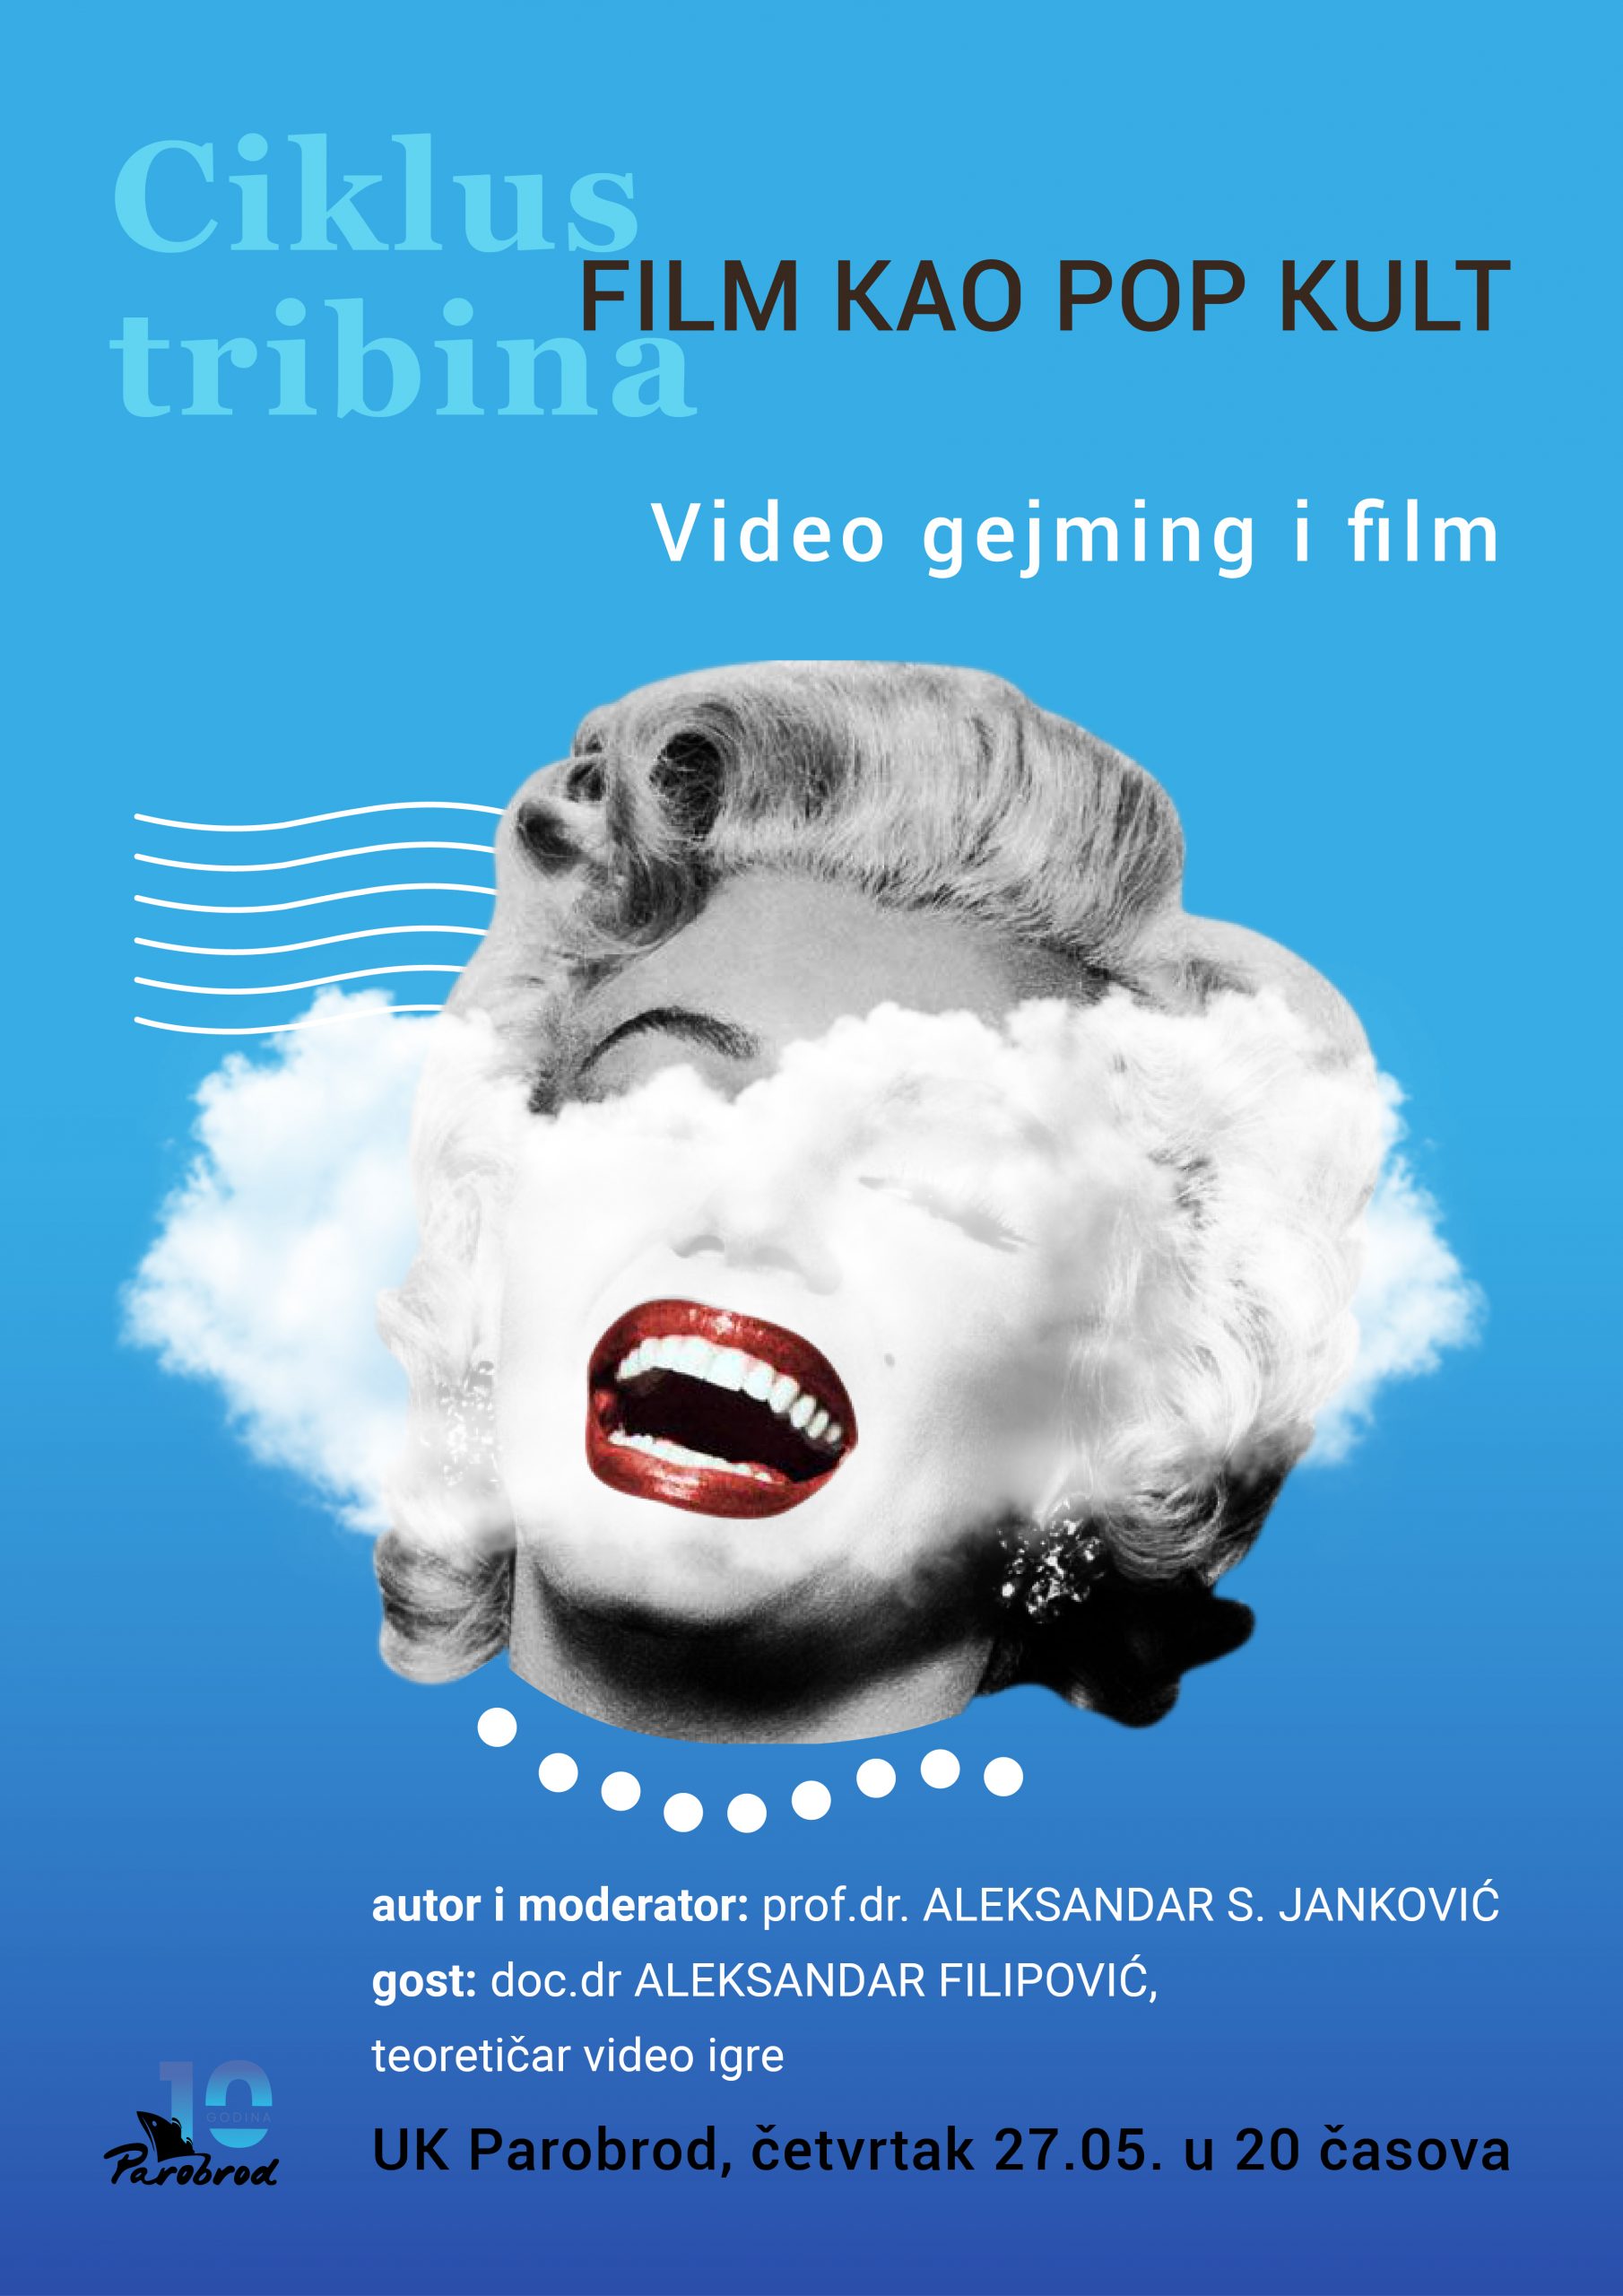 Ciklus tribina: Film kao pop kult